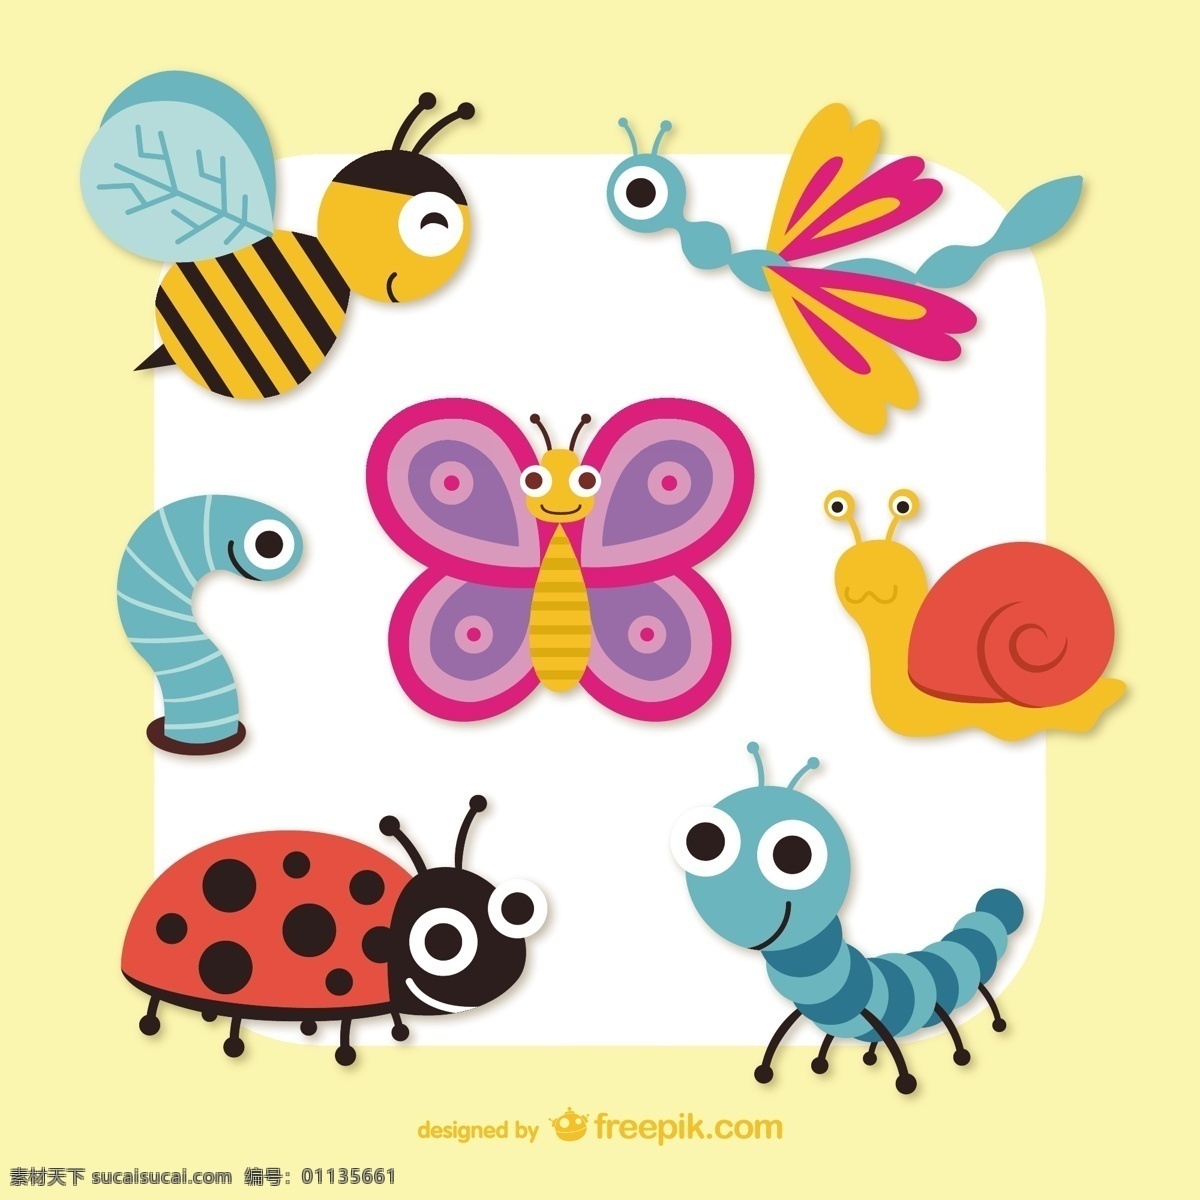 可爱 的卡 通 昆虫 蝴蝶 illustrator 图标 网页 卡通 图形 蜜蜂 网页设计 朋友 新的 平面设计 创意 元素 网页图标 界面 品质 设计元素 黄色